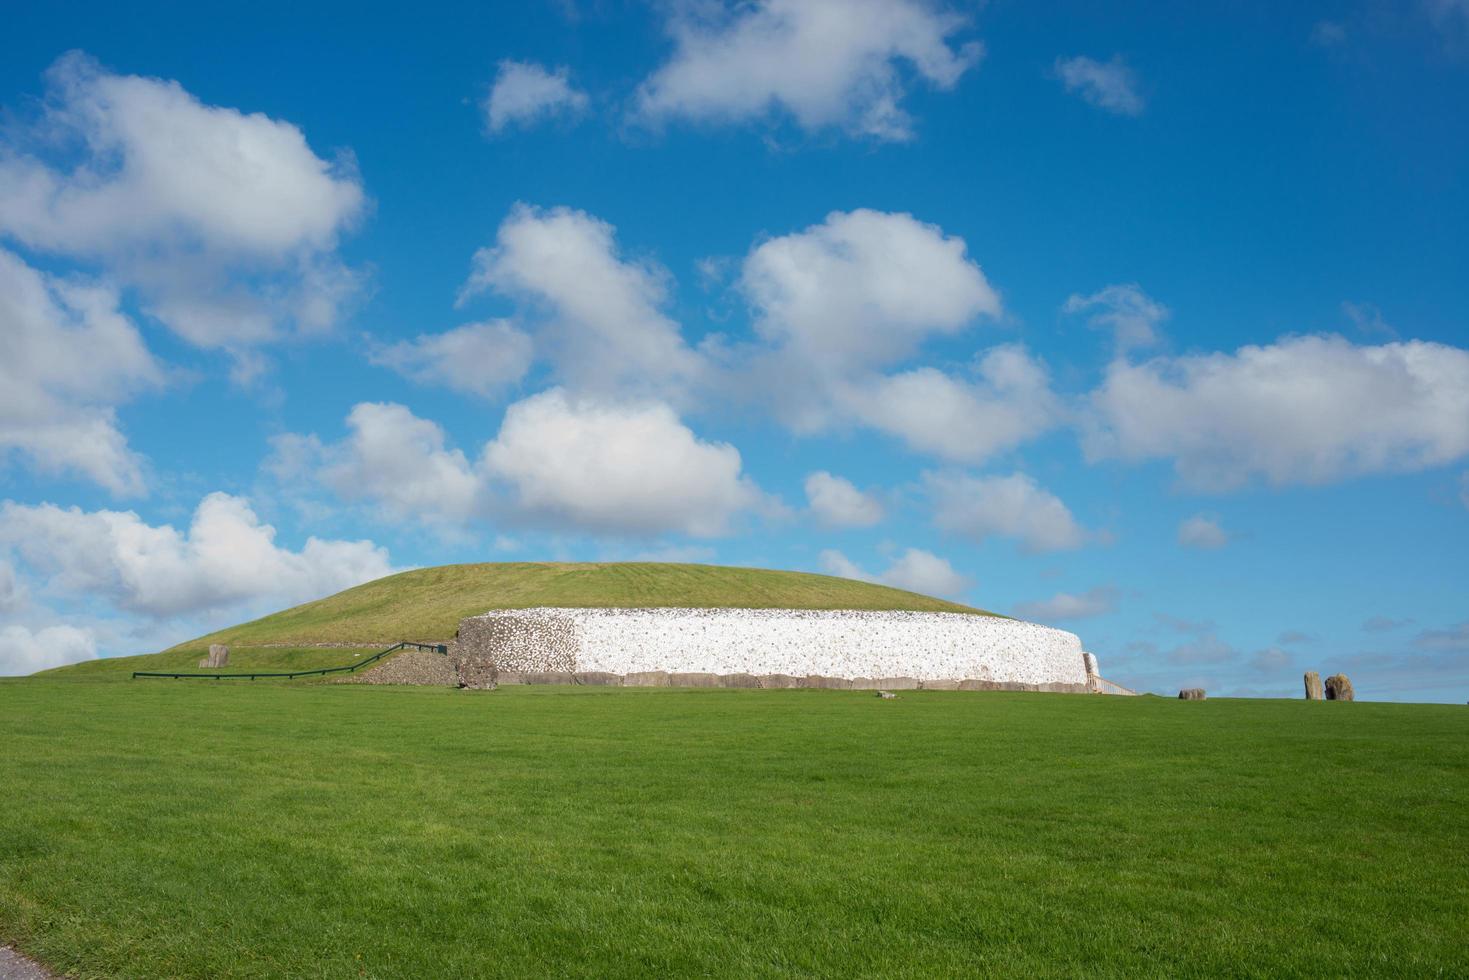 tumba del pasaje de newgrange, un sitio del patrimonio mundial de la unesco. una de las cámaras funerarias neolíticas más antiguas de europa. cielo azul con algunas nubes. foto